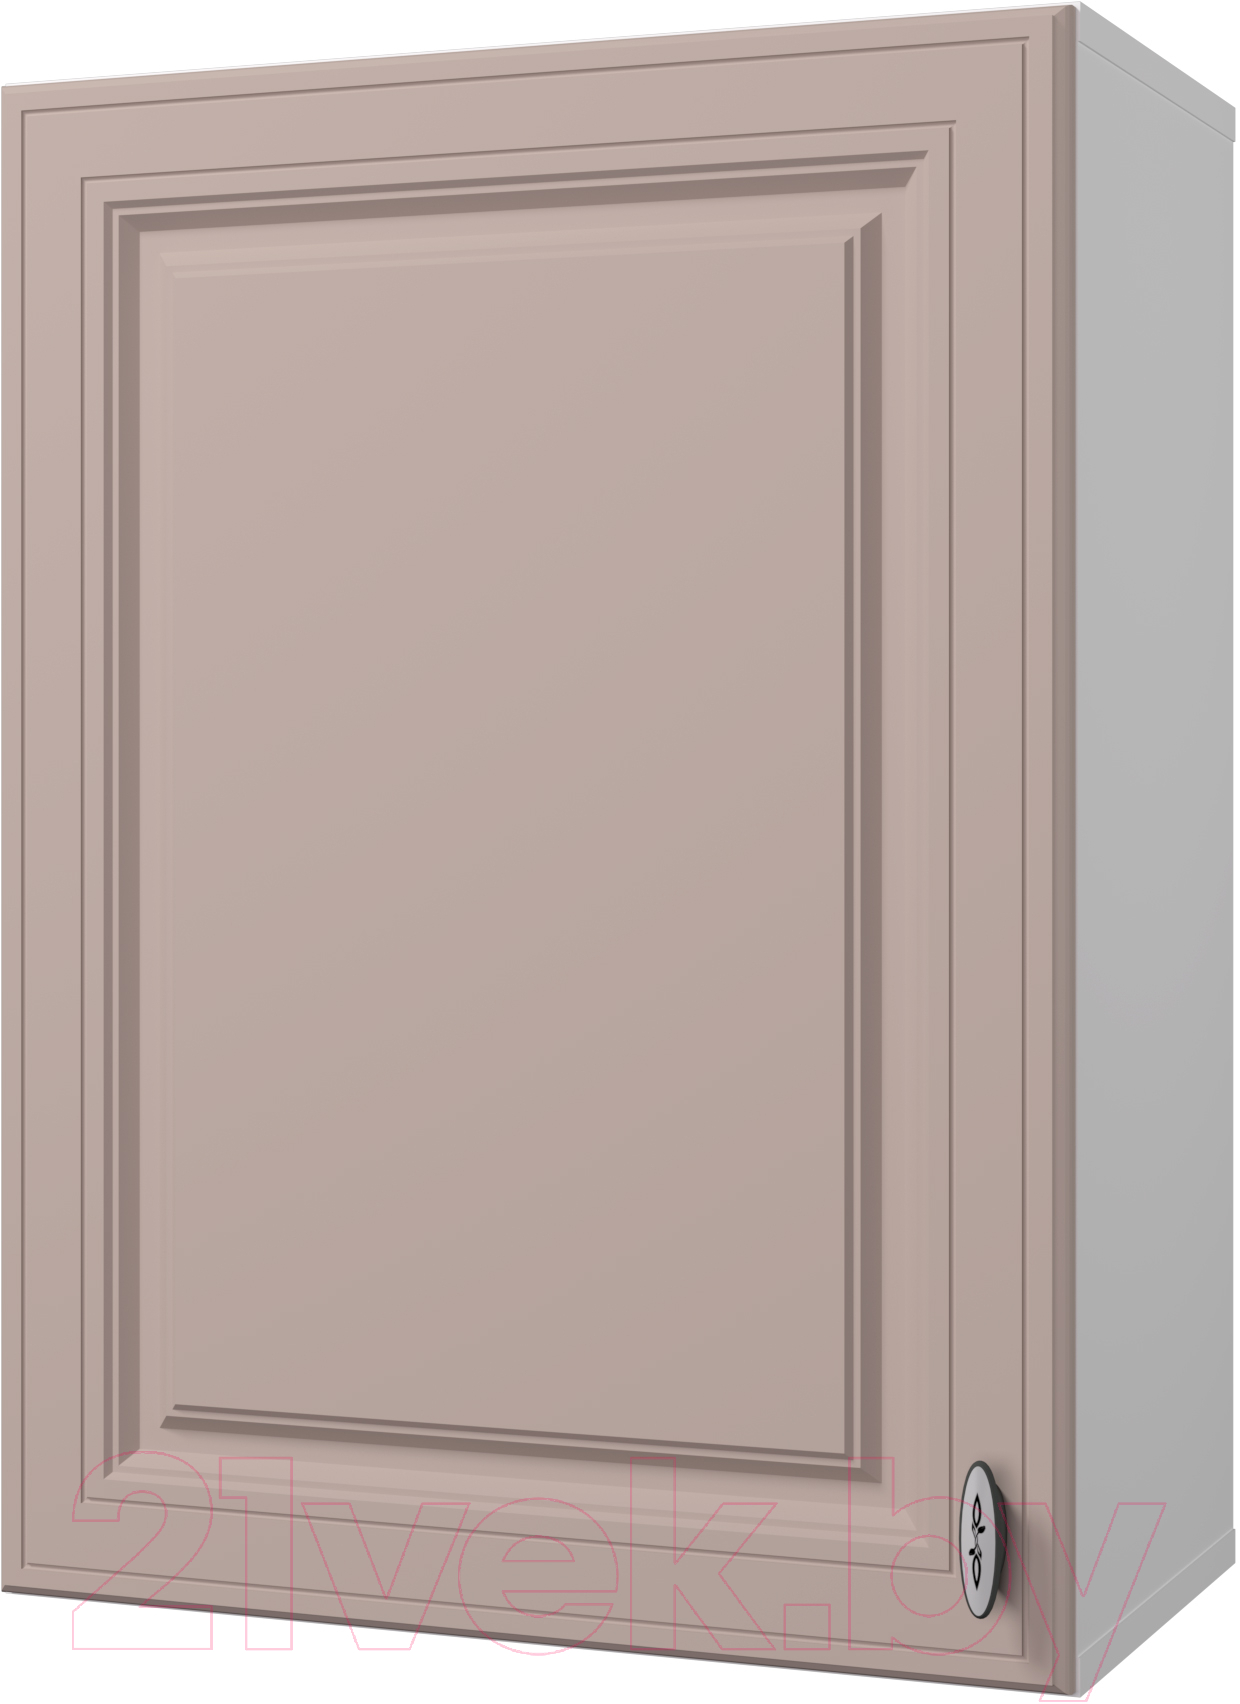 Шкаф навесной для кухни Горизонт Мебель Ева 50 (мокко софт)